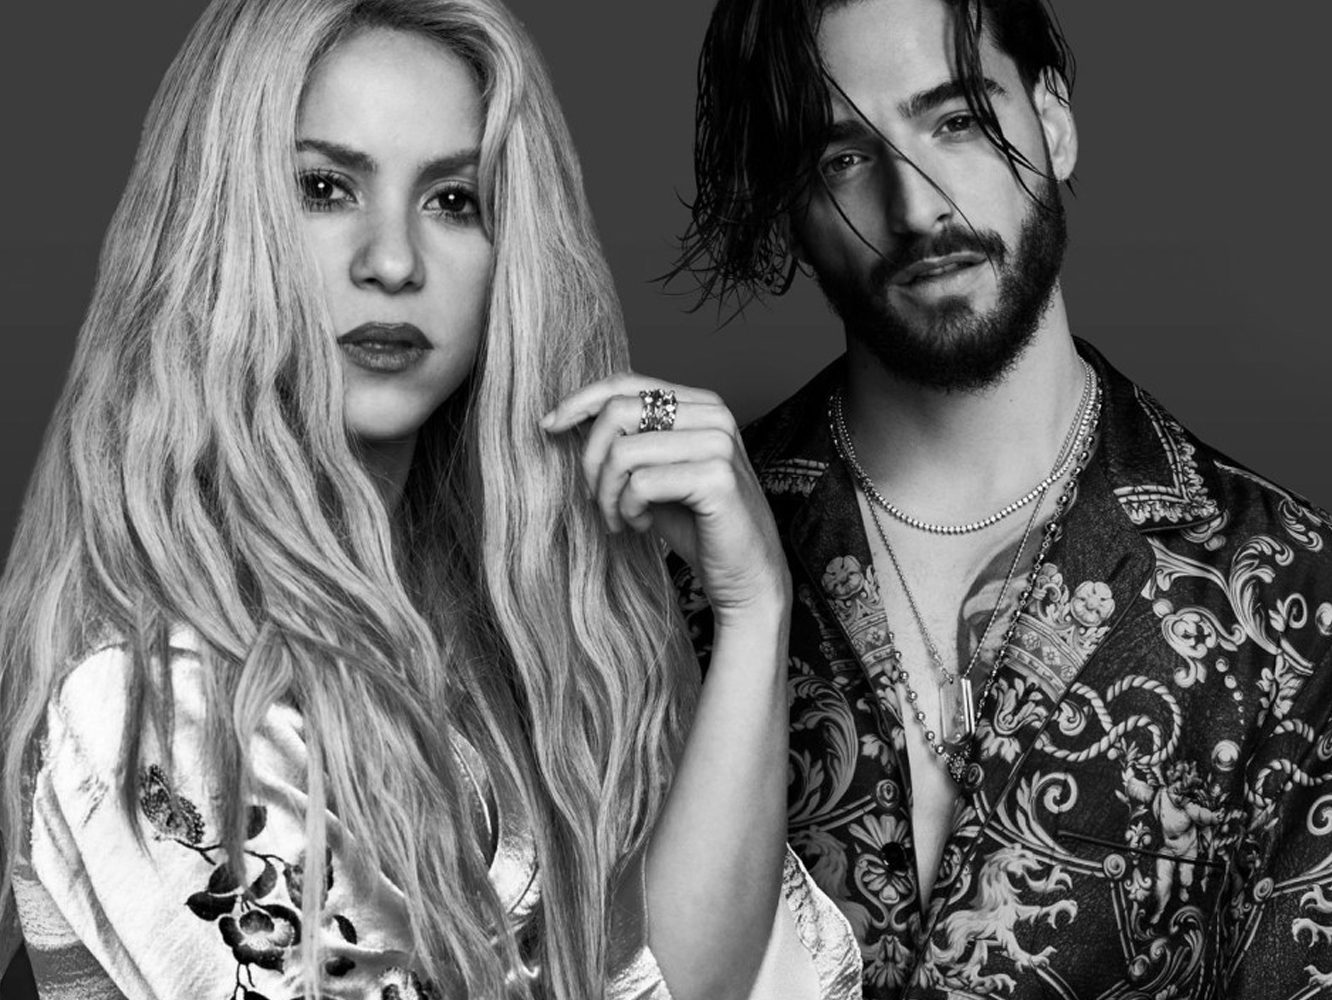  Shakira y Maluma agotan su fórmula con ‘Clandestino’, el peor de sus duetos hasta ahora